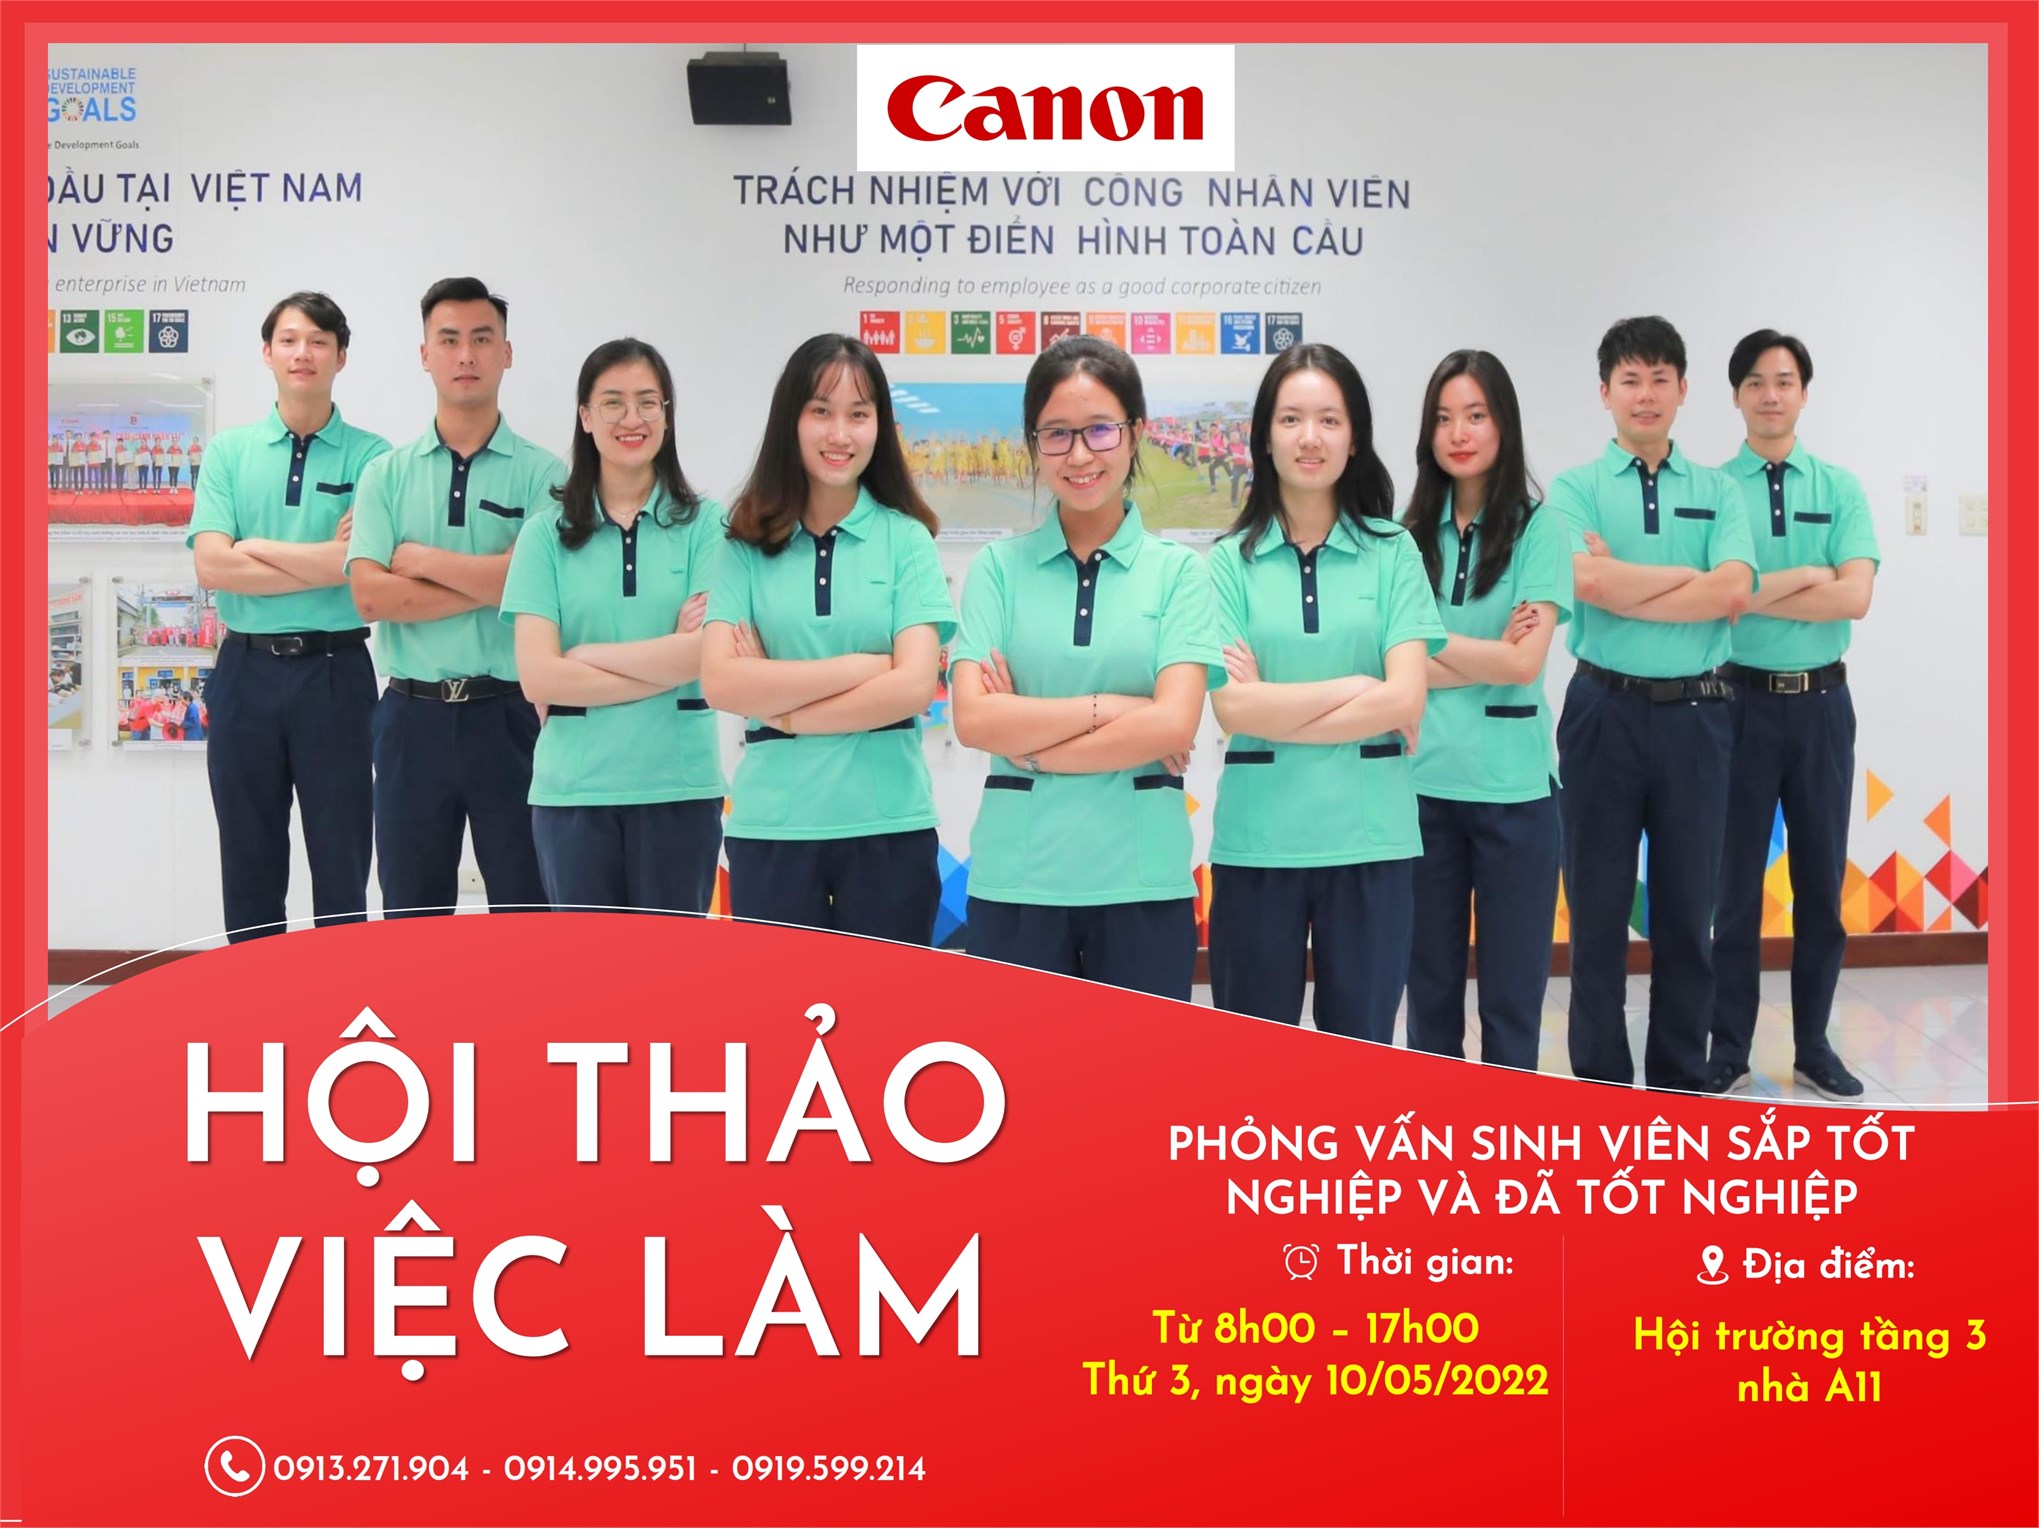 Kế hoạch Hội thảo việc làm và tuyển dụng trực tiếp của Công ty TNHH Canon Việt Nam (Canon) - Thứ 3 ngày 10/05/2022